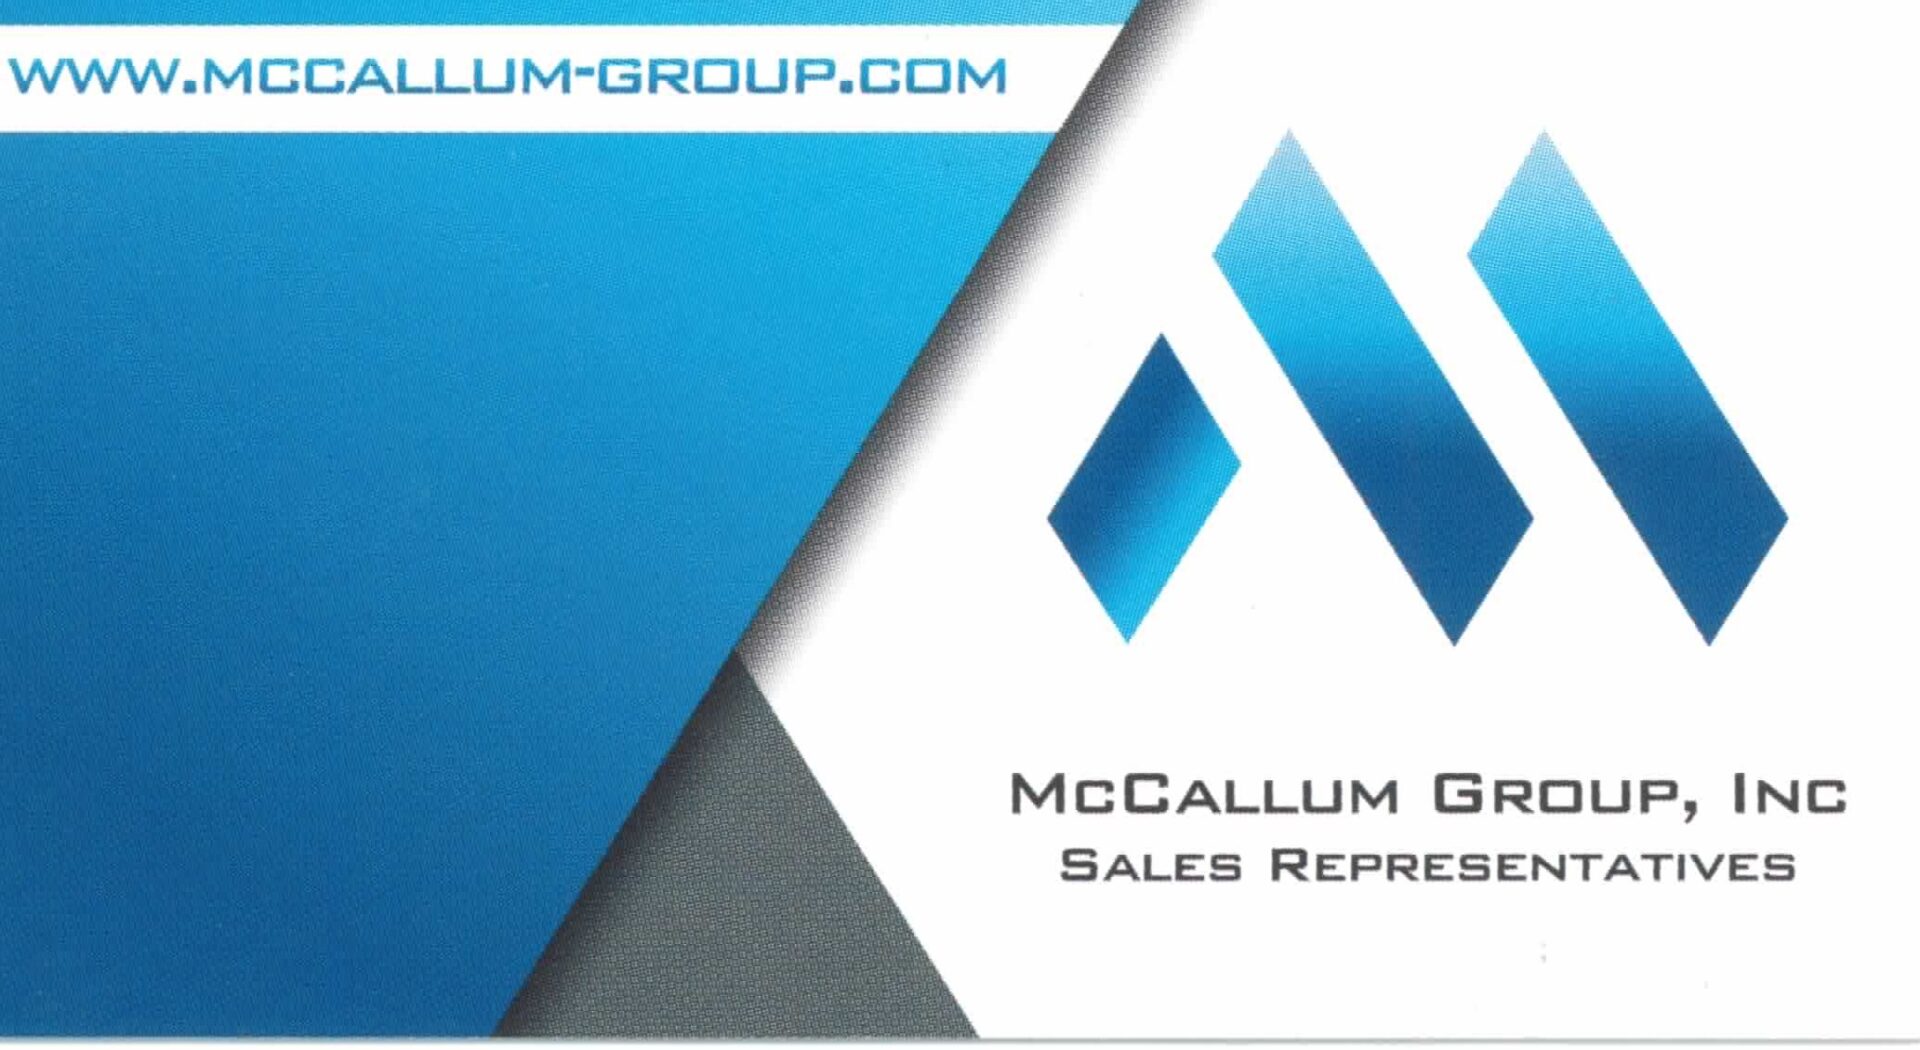 McCallum Group